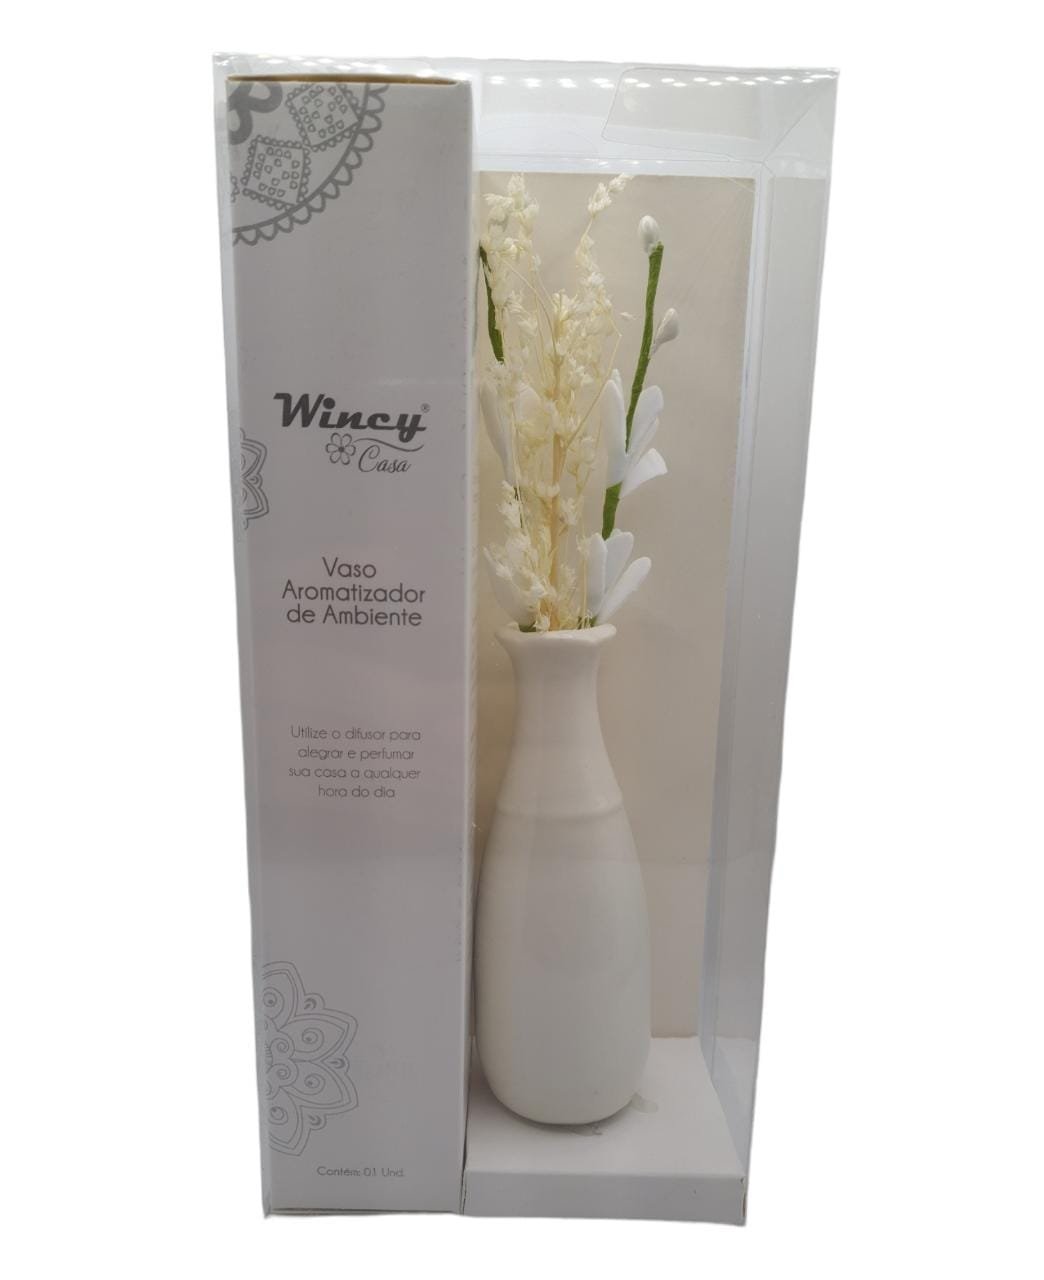 Vaso Floral Aromatizador de Ambiente Porcelana com Varetas:Branco - 1